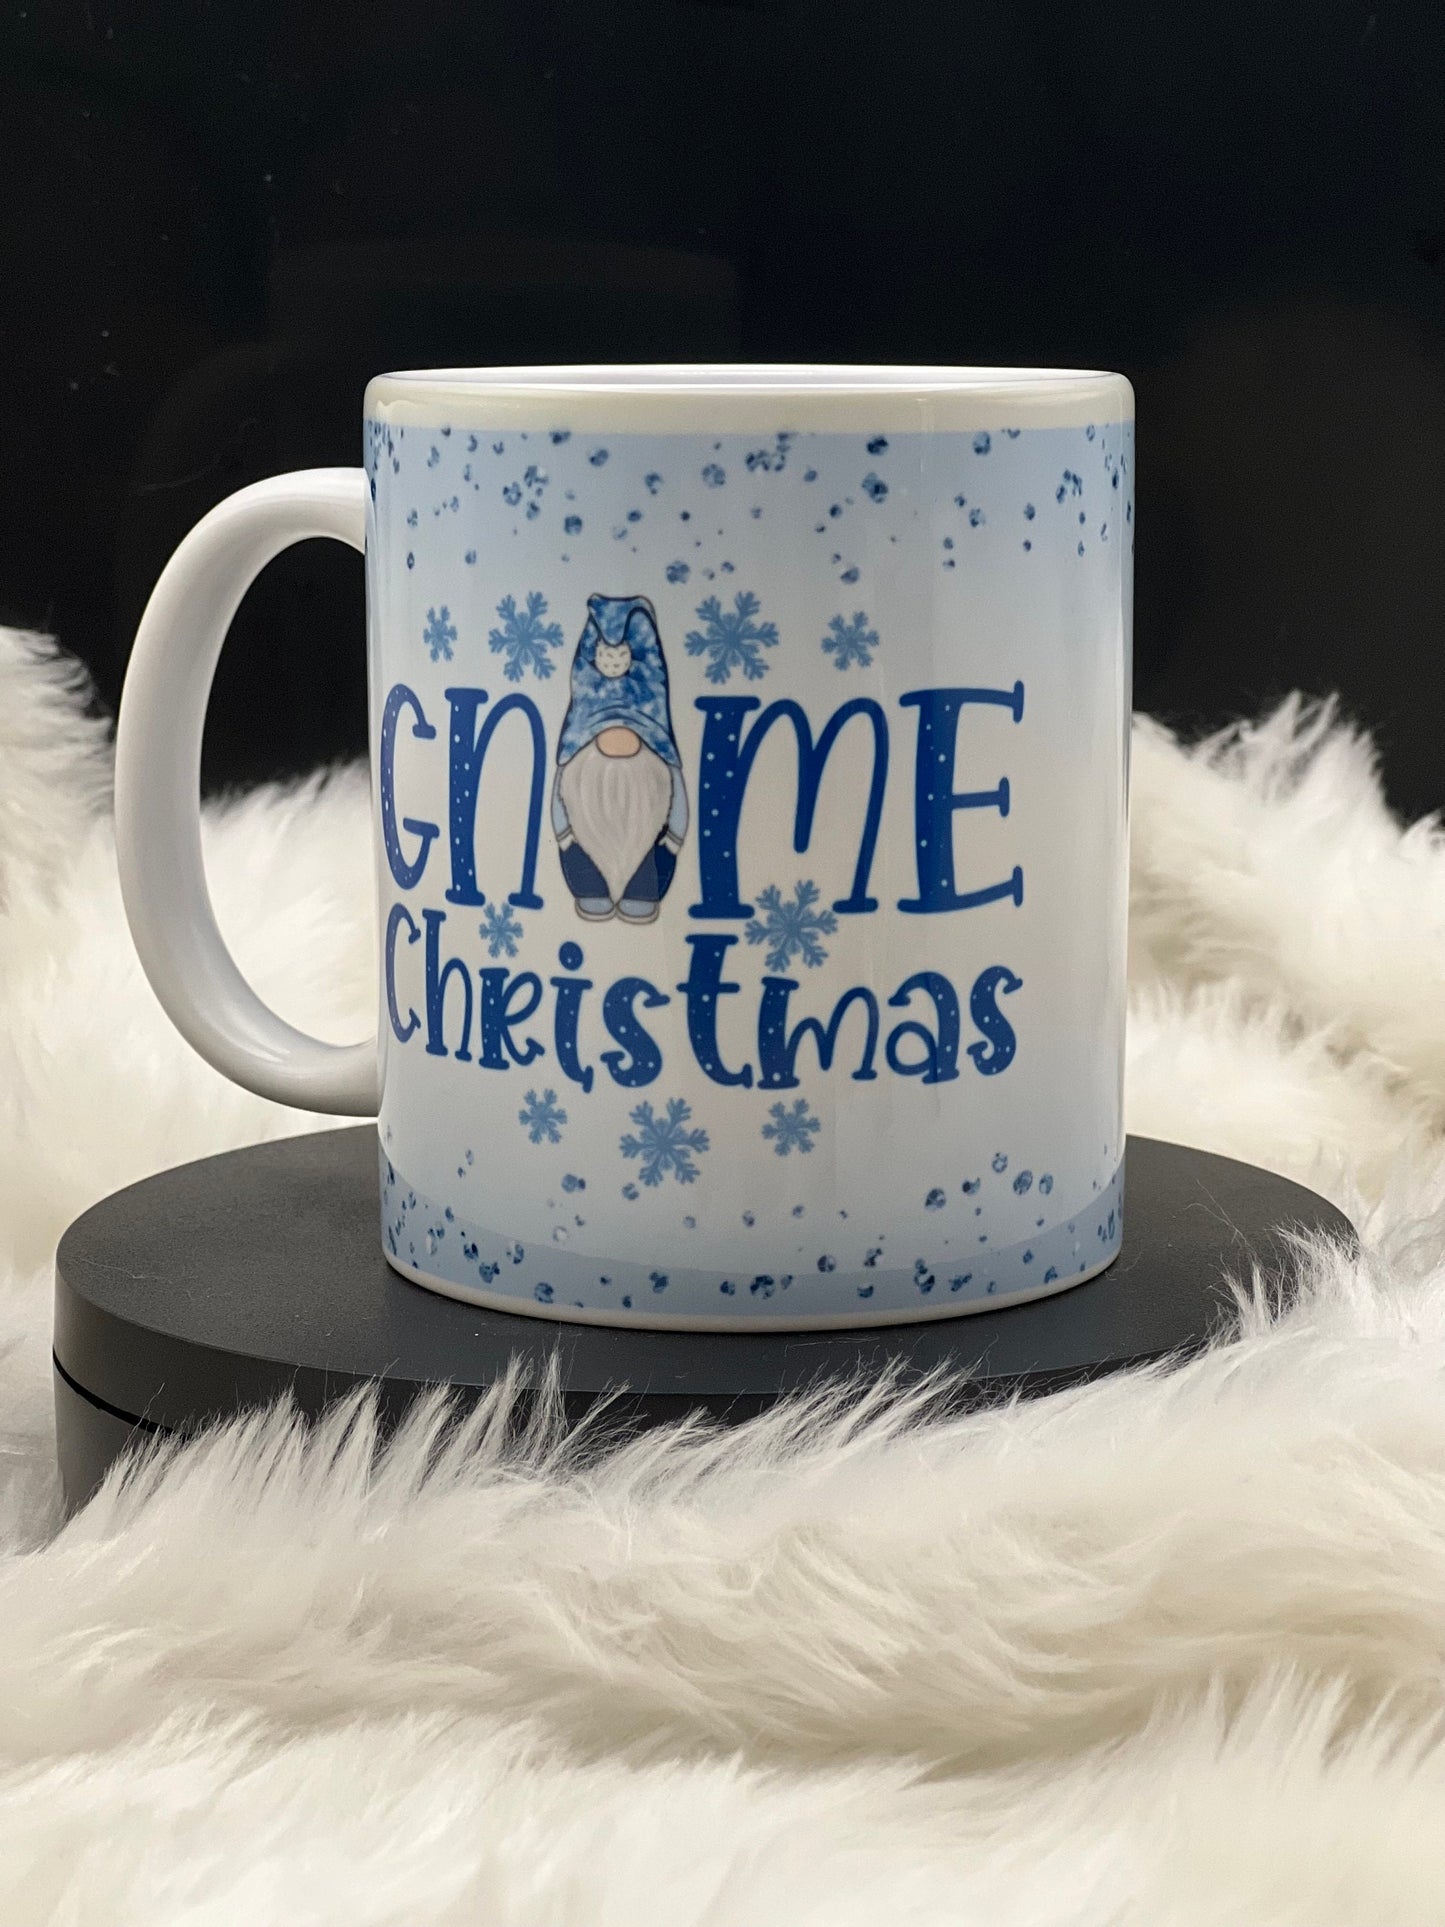 Gnome Christmas mug